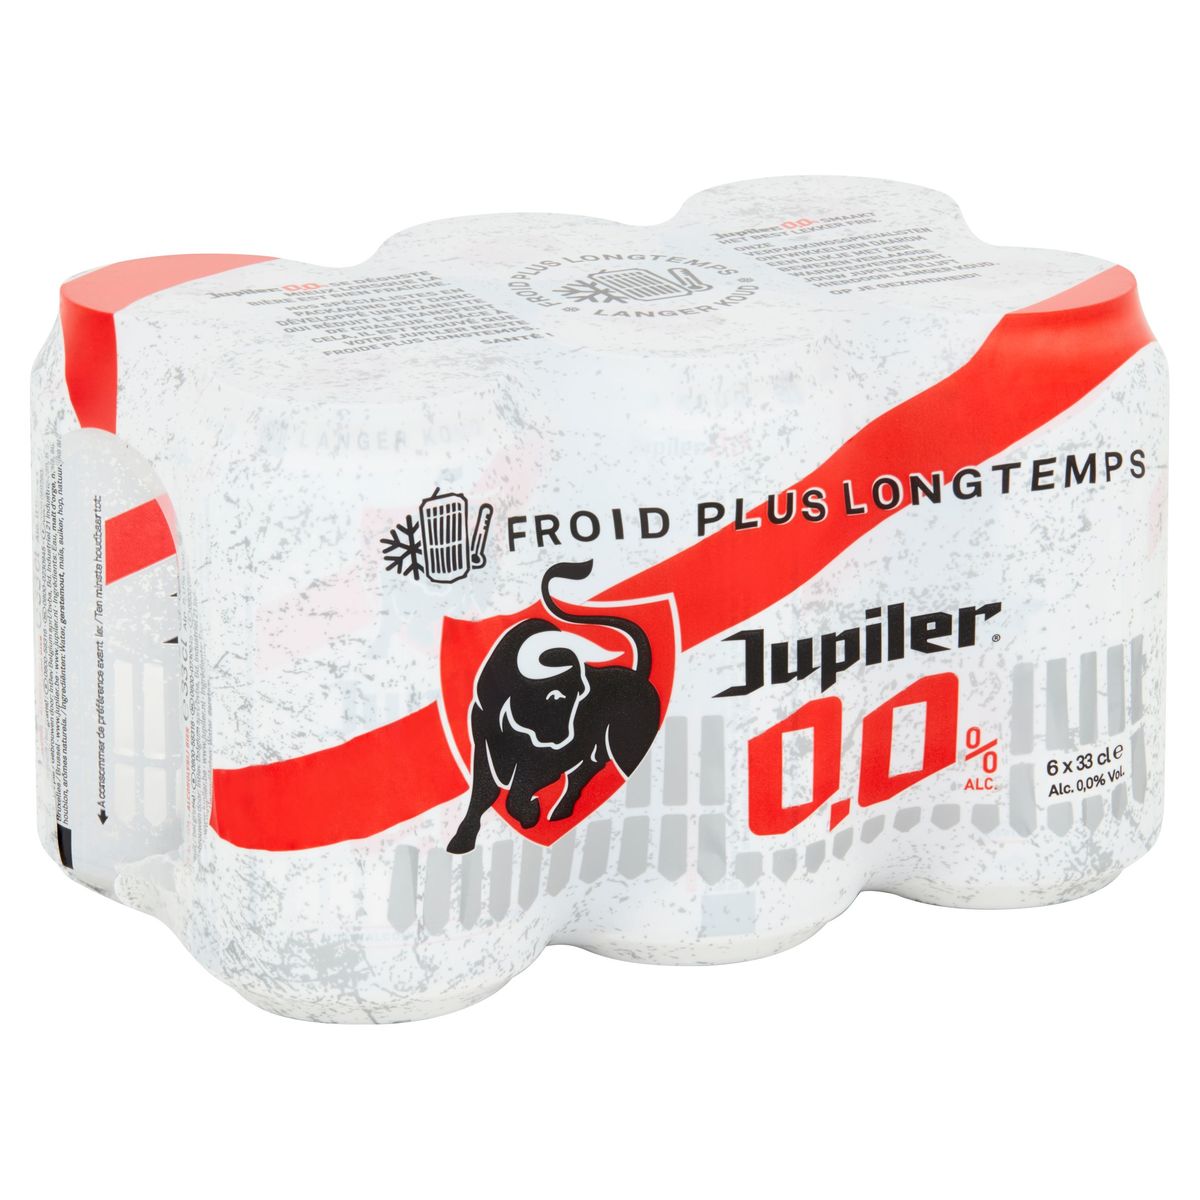 Jupiler Blond Bier Pils 0.0% 6x33cl Blikken Cold Grip